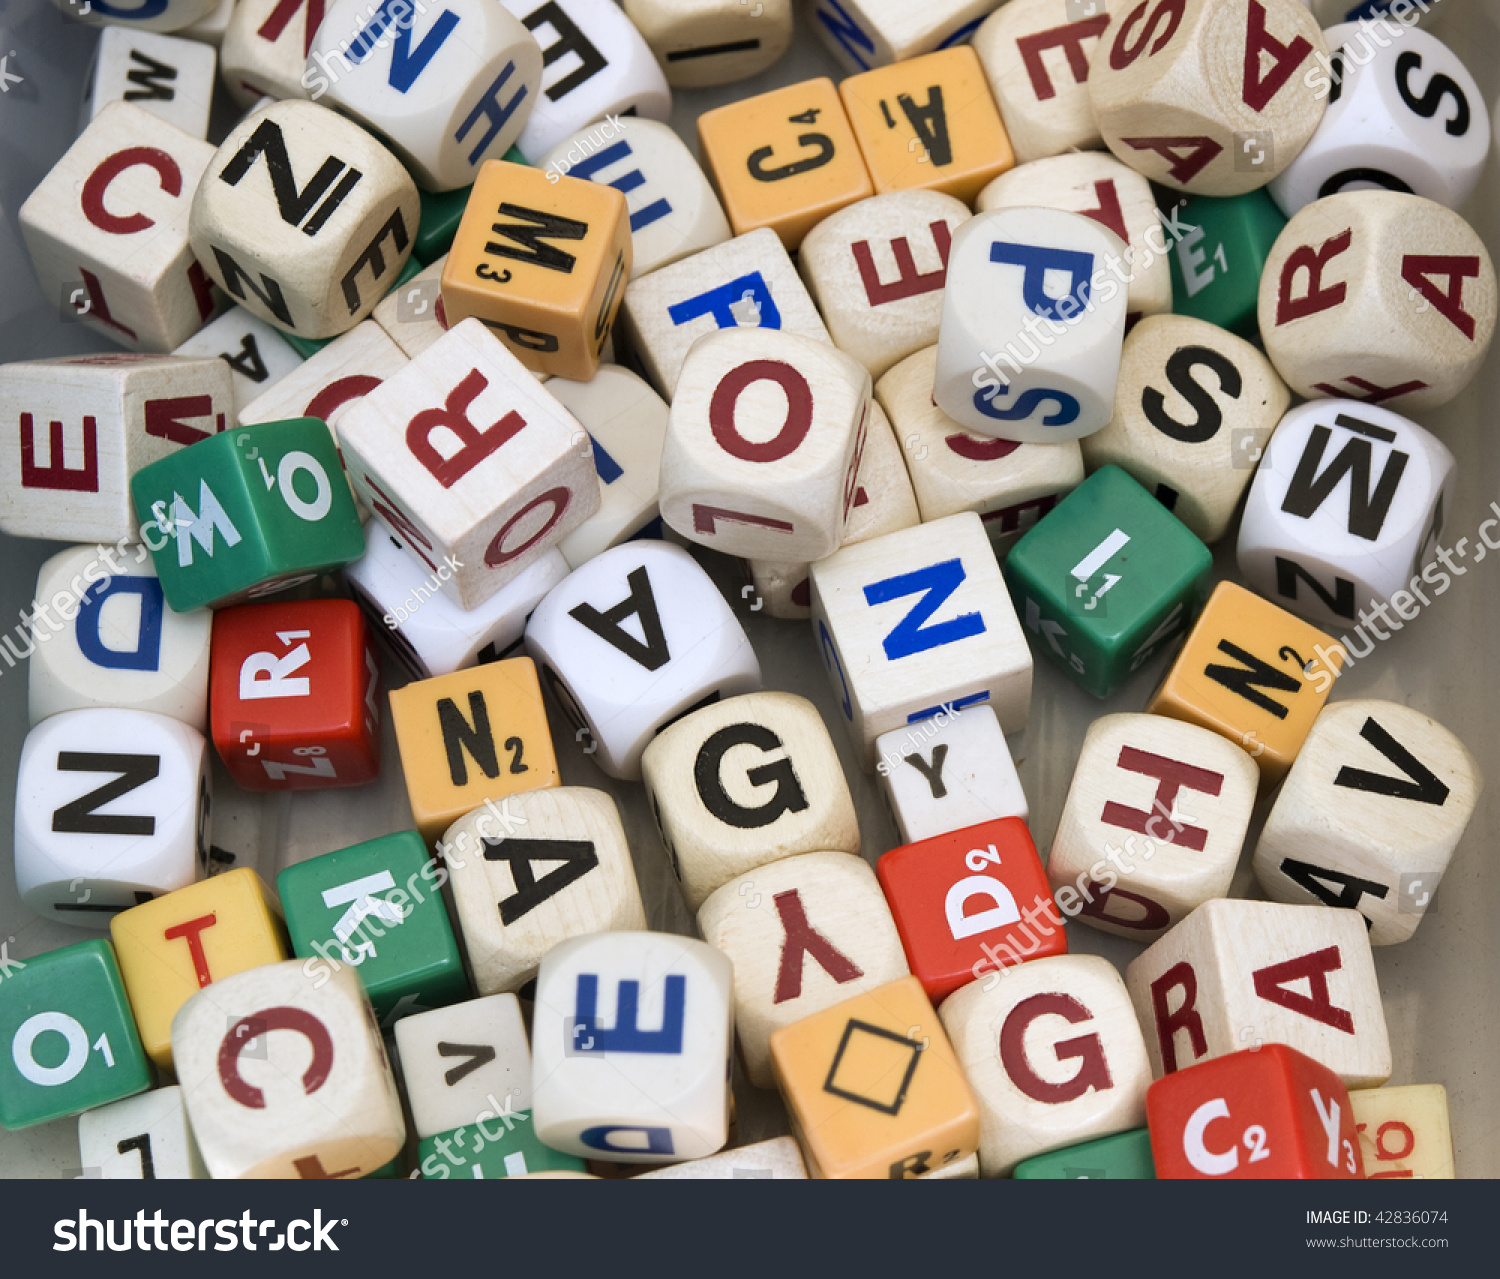 随机掷骰子的字母字母数组,通常用于游戏或构